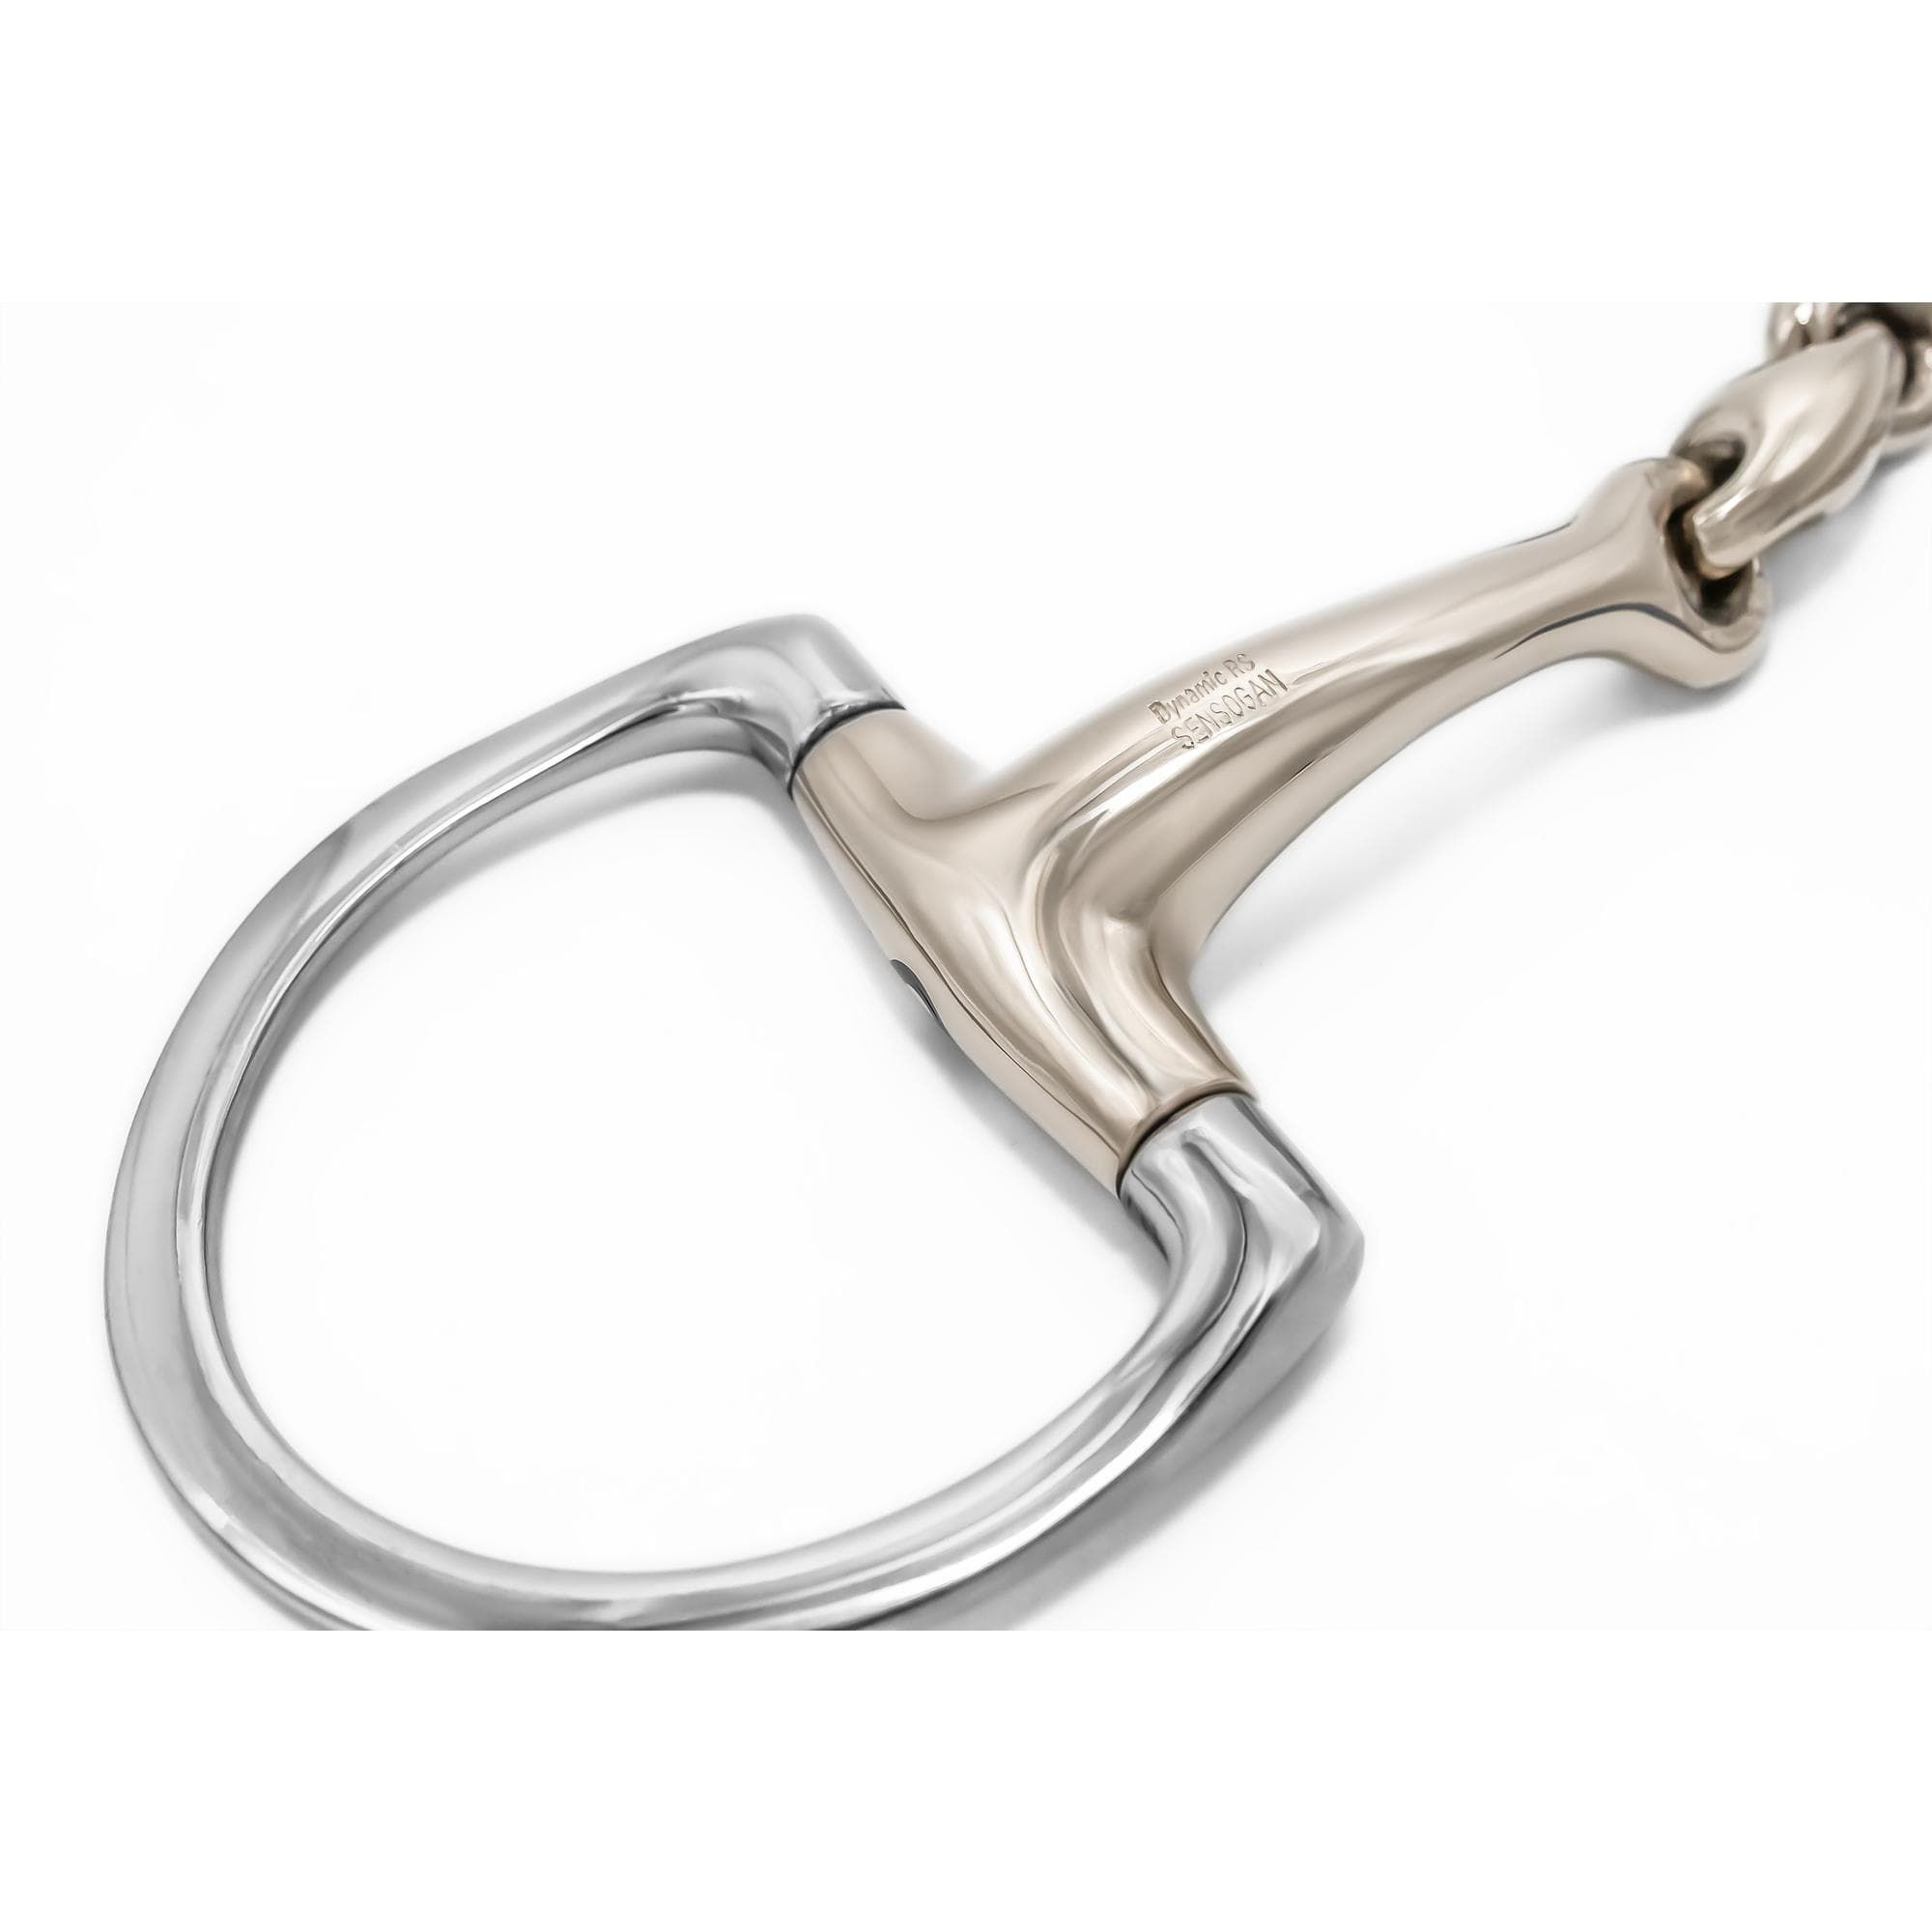 HS Sprenger Dynamic RS Olivenkopfgebiss mit D-förmigem Ring 16 mm doppelt gebrochen-